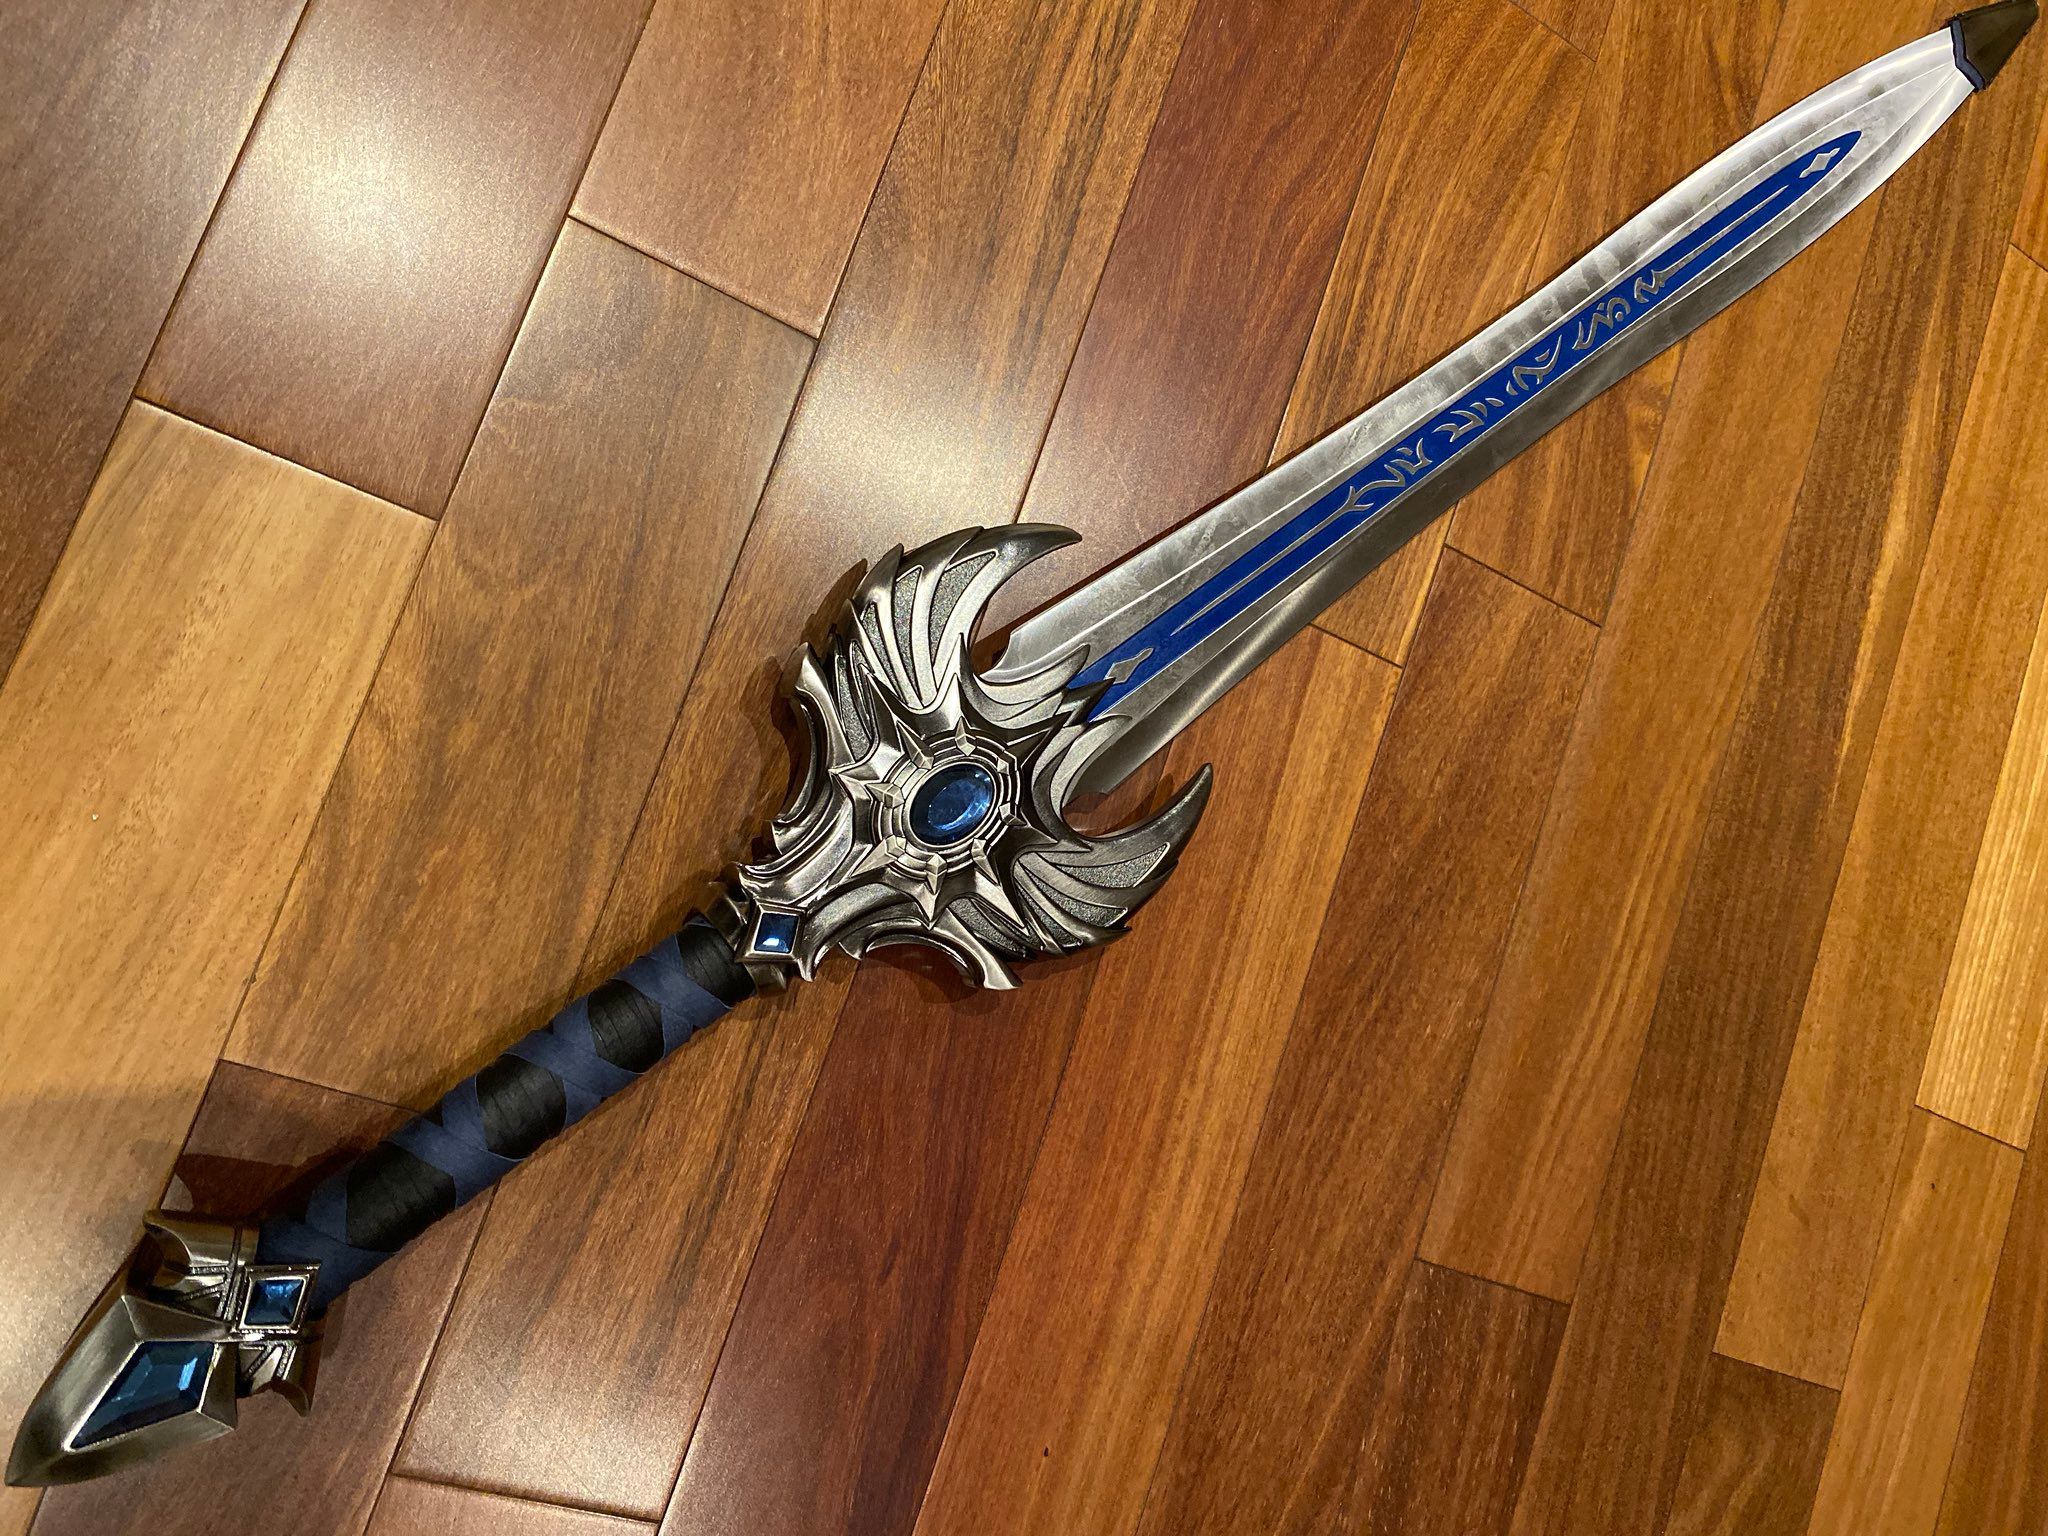 Дизайн меча Blizzard в 2019 году. Источник: twitter.com/Ardrous1.